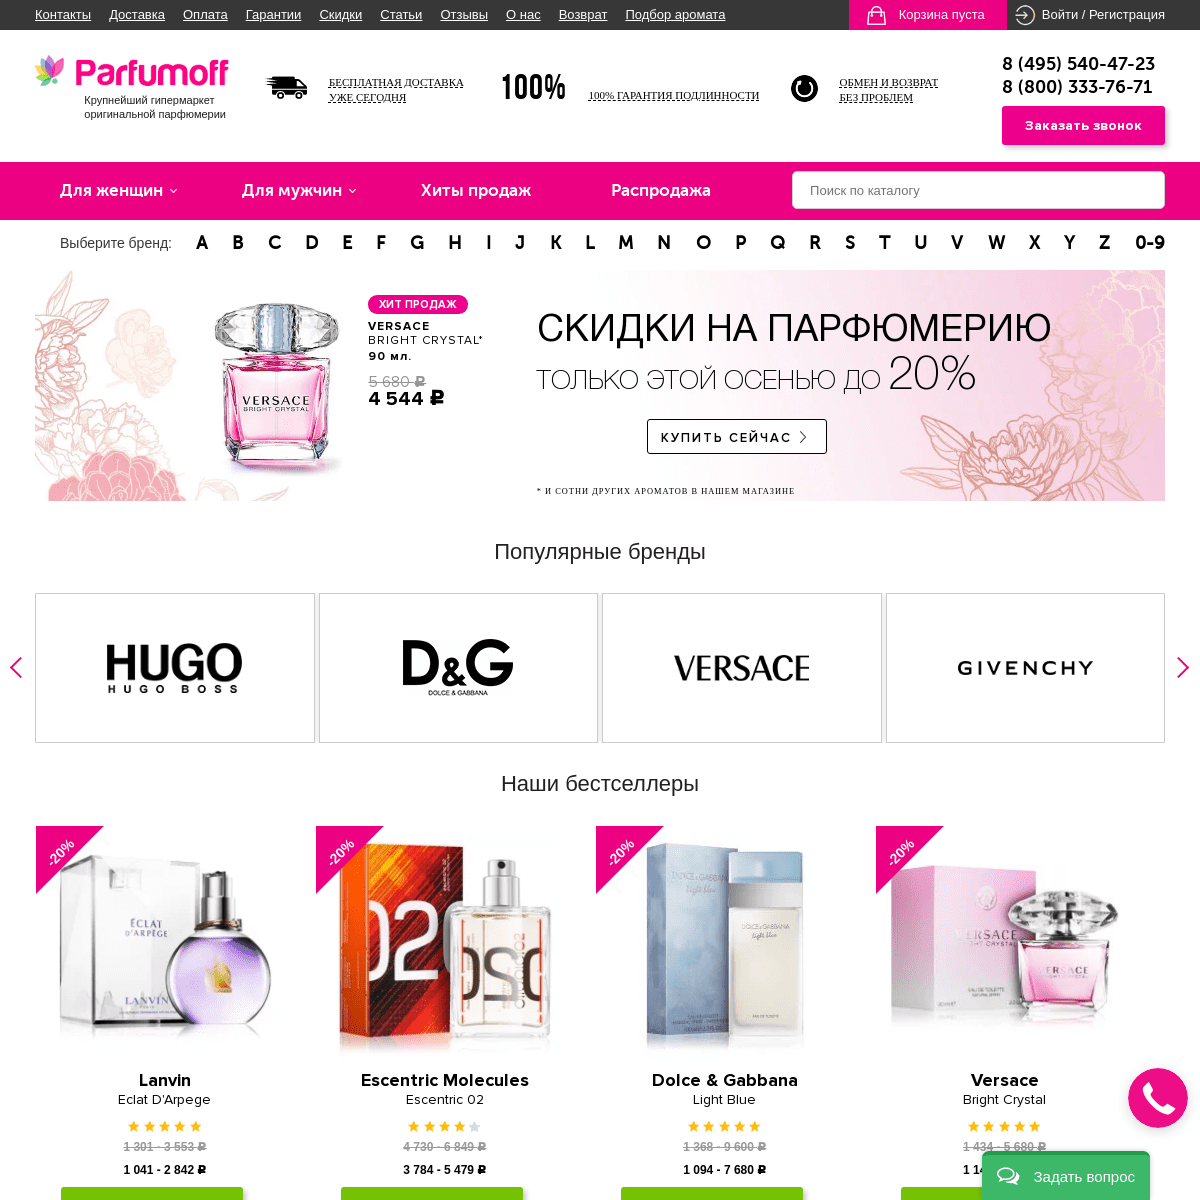 Интернет-магазин оригинальной парфюмерии Parfumoff, купить недорогие духи с доставкой по Москве